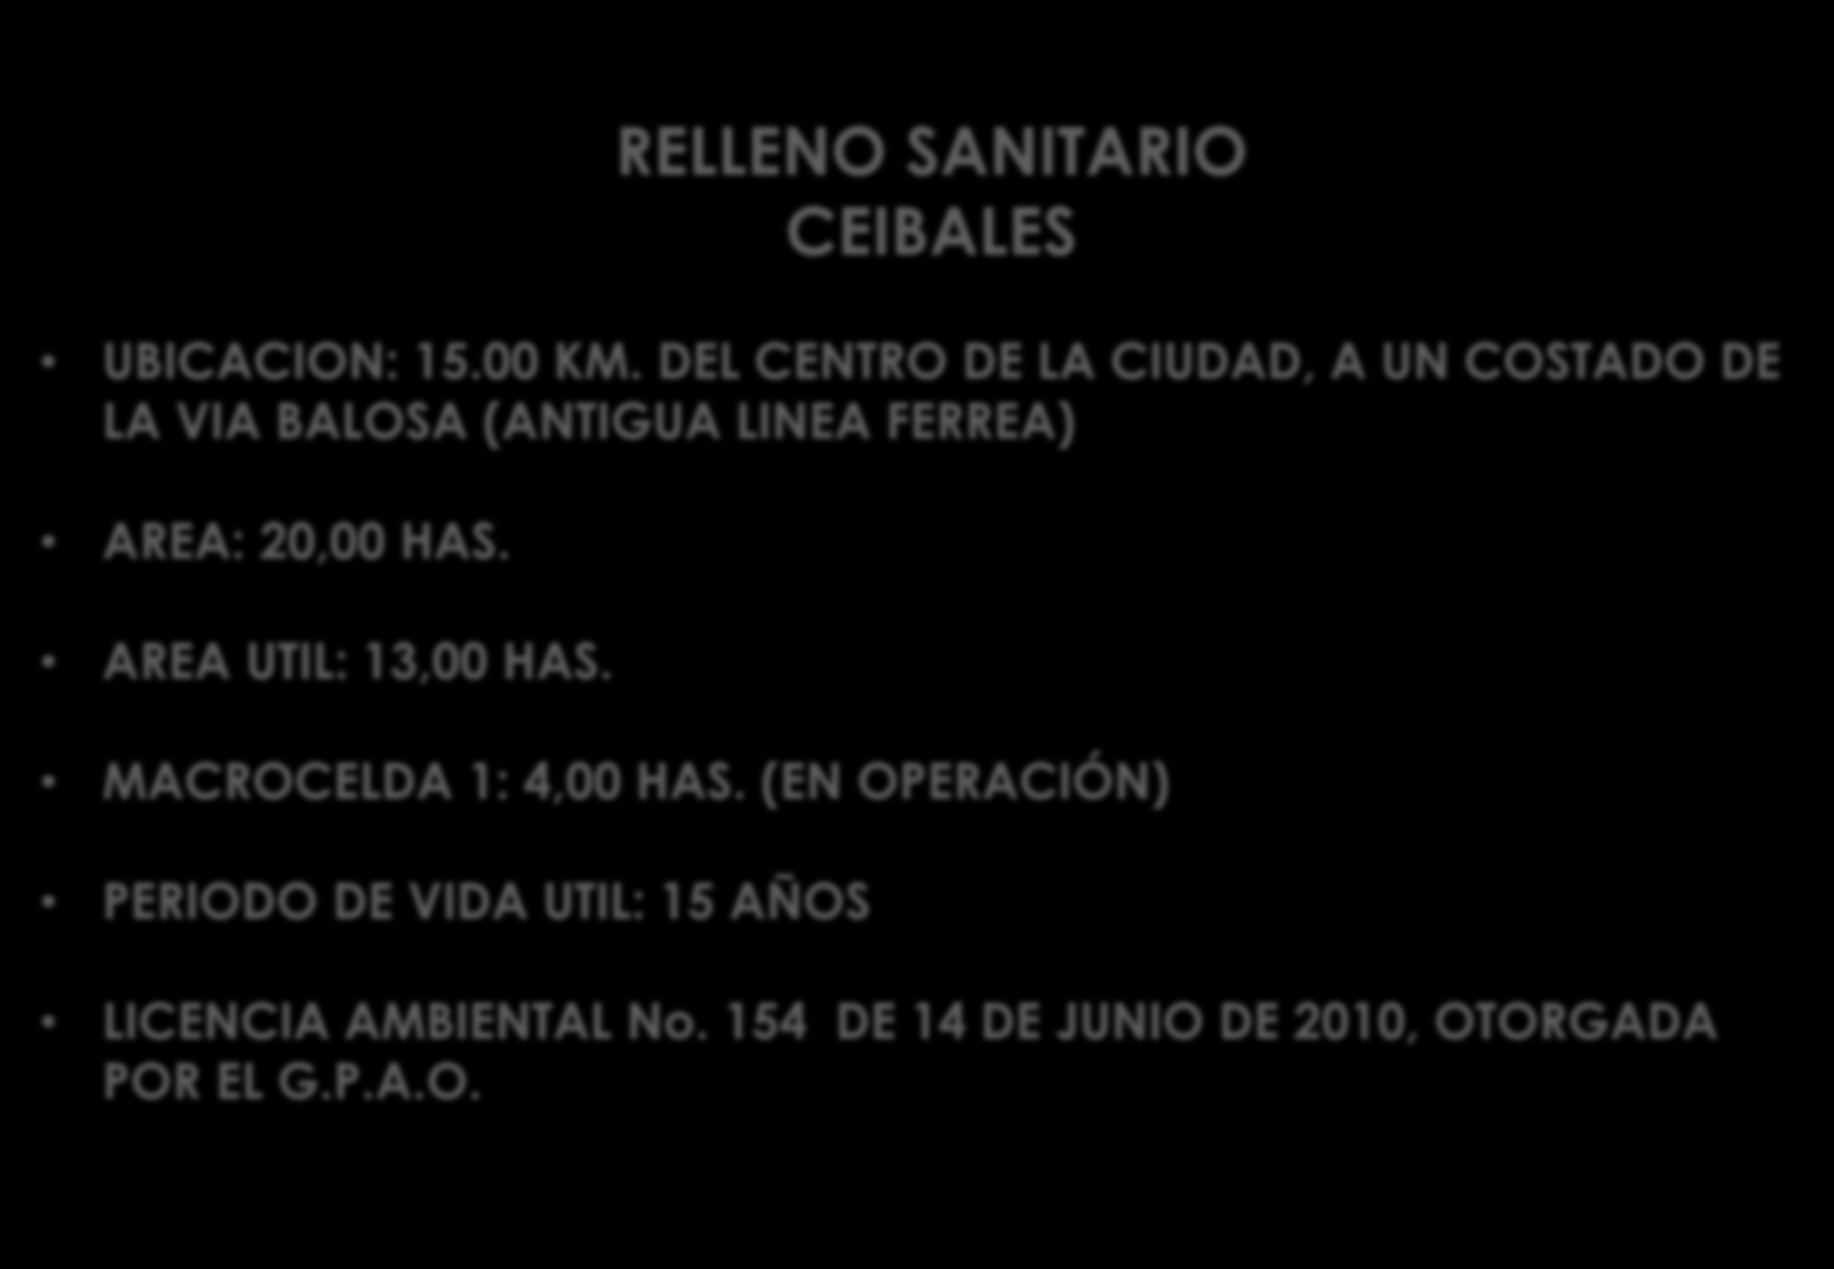 DISPOSICION FINAL RELLENO SANITARIO CEIBALES UBICACION: 15.00 KM. DEL CENTRO DE LA CIUDAD, A UN COSTADO DE LA VIA BALOSA (ANTIGUA LINEA FERREA) AREA: 20,00 HAS.